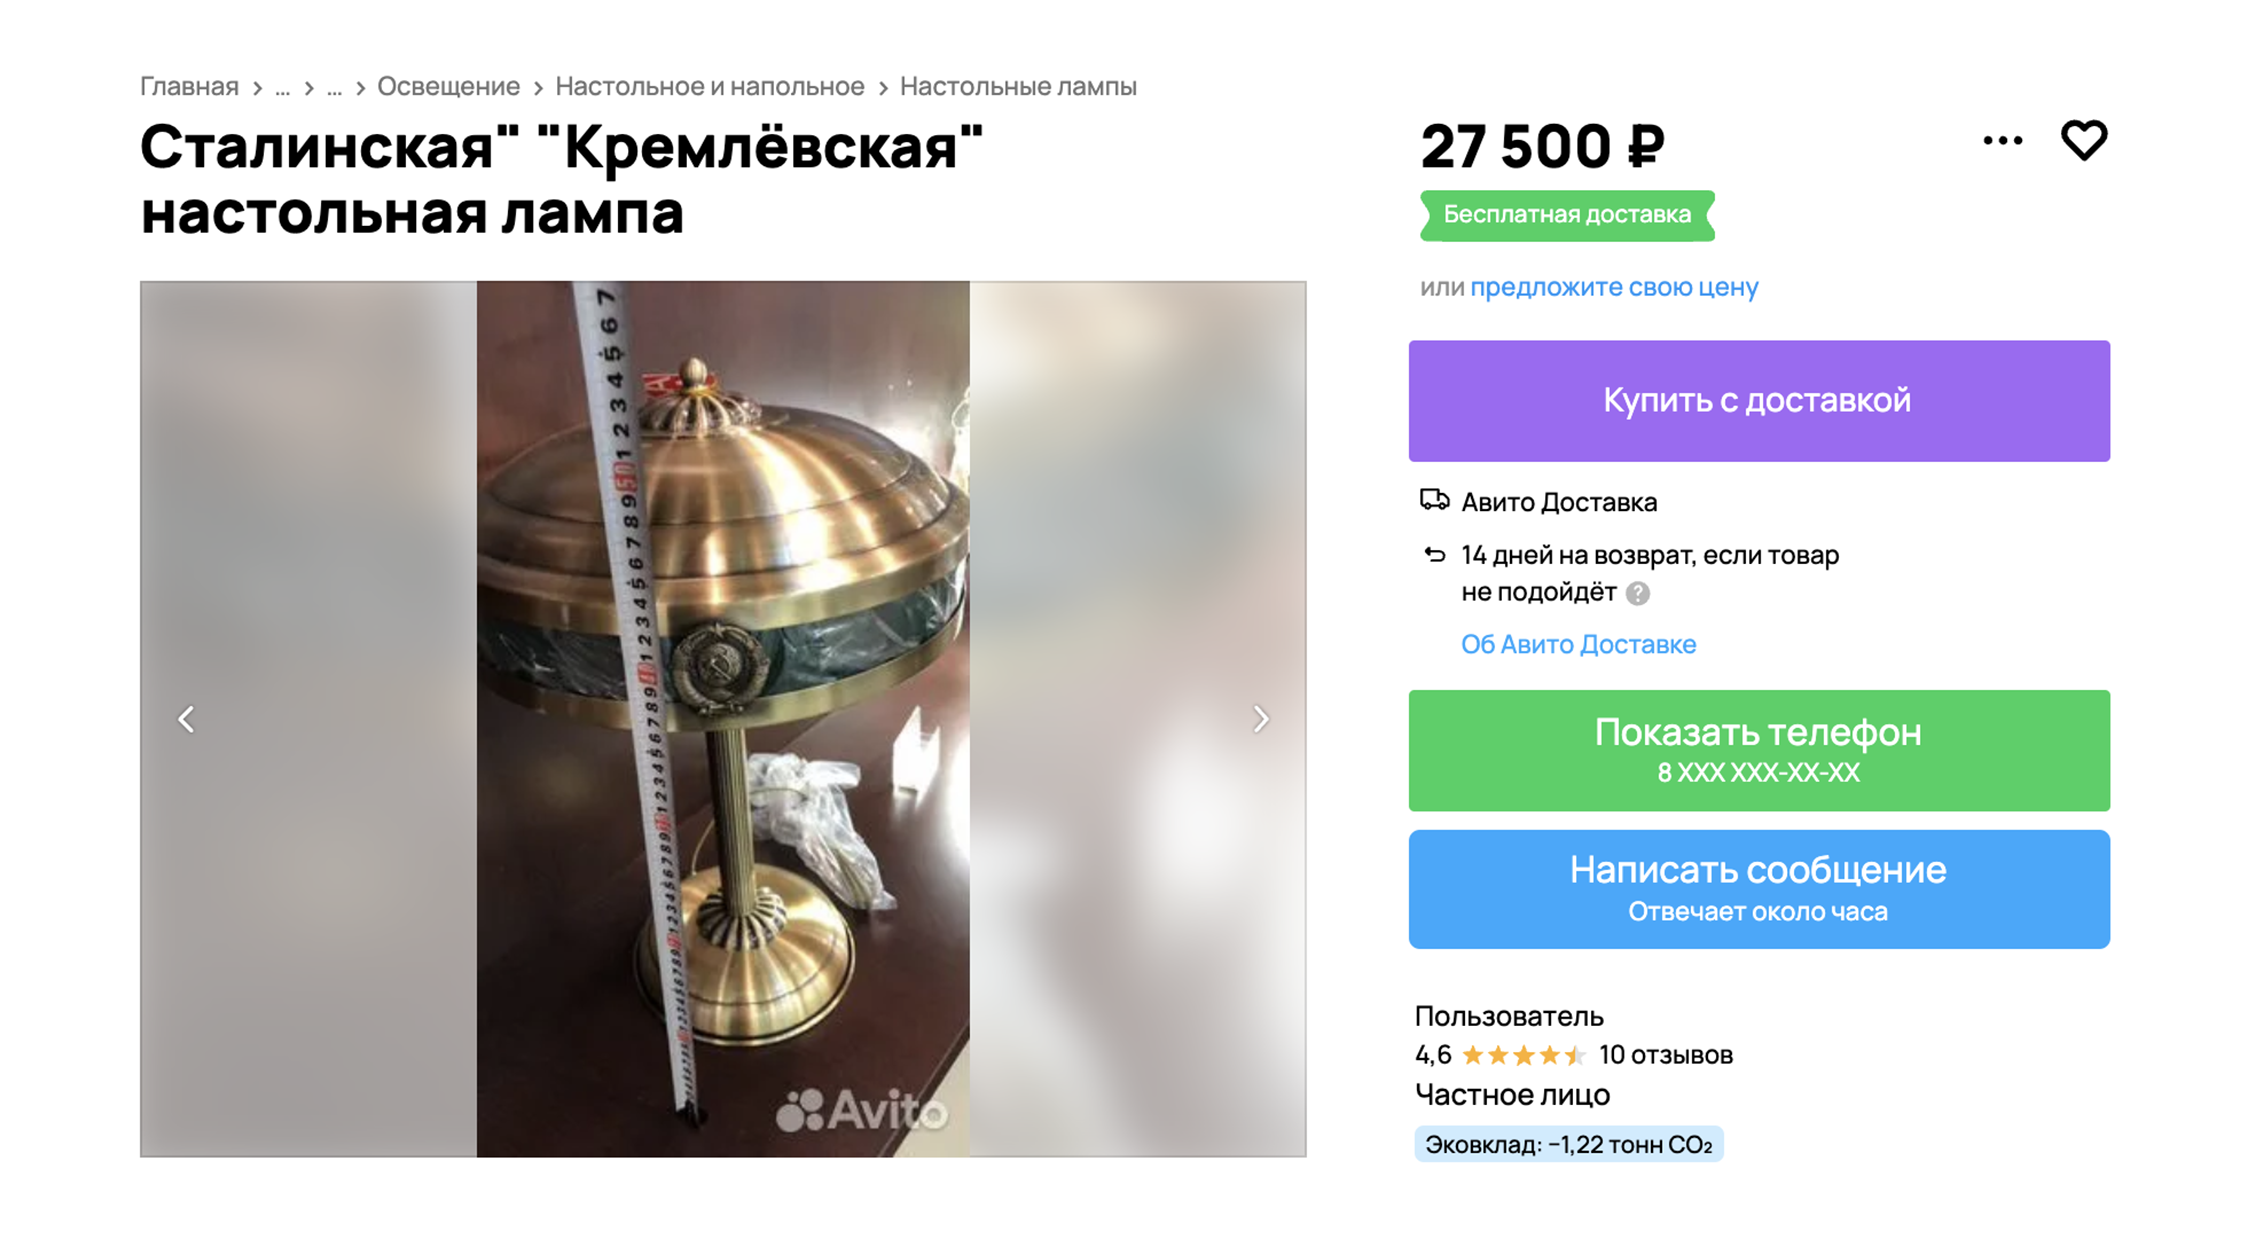 Лампа как в Ленинской библиотеке стоит значительно дороже. Источник: avito.ru